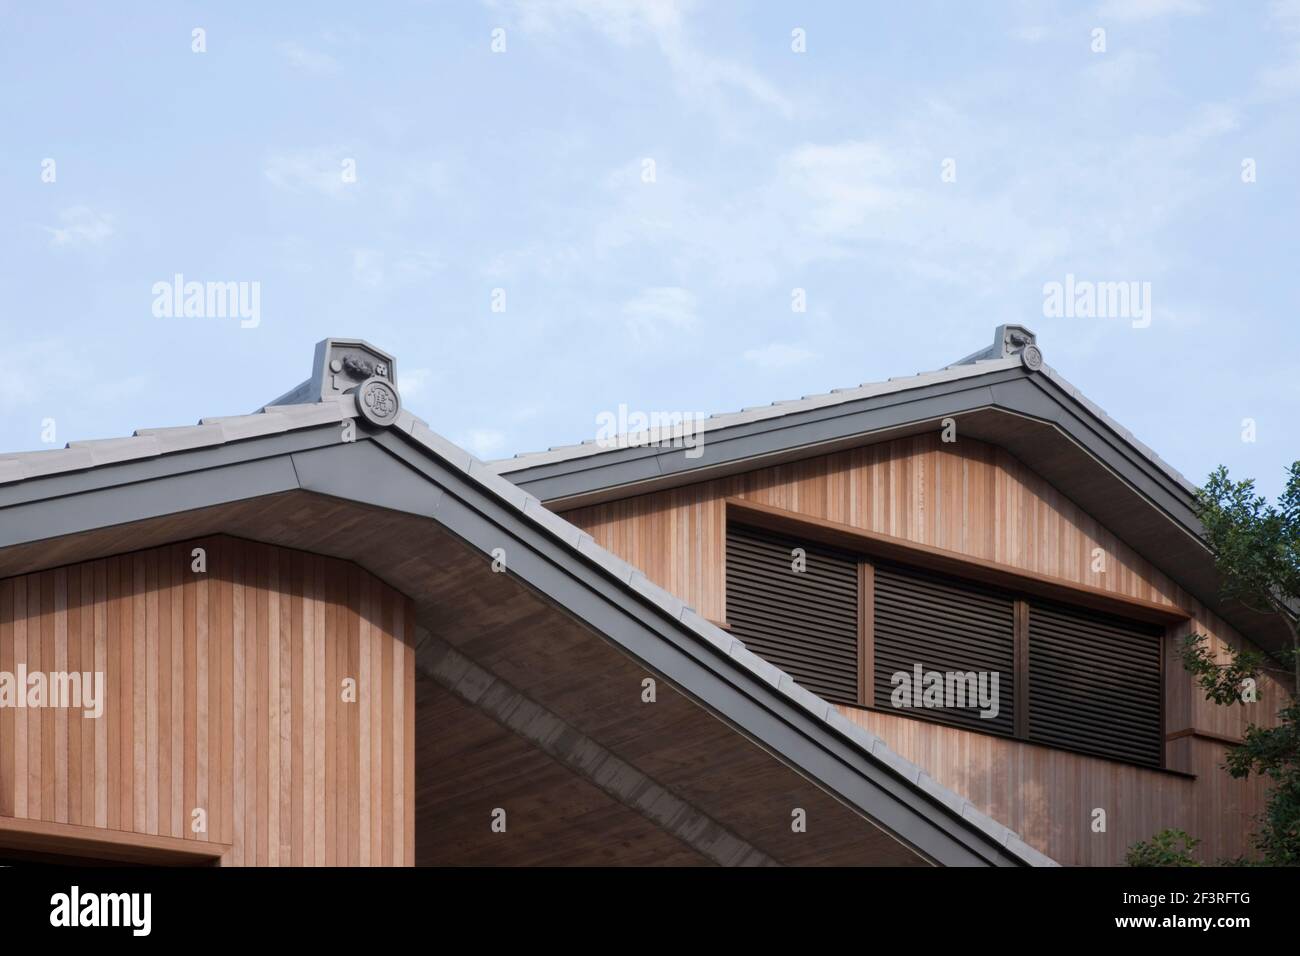 TORAYA KYOTO, magasin, café restaurant, usine, vue de la crête traditionnelle sur le toit. Banque D'Images